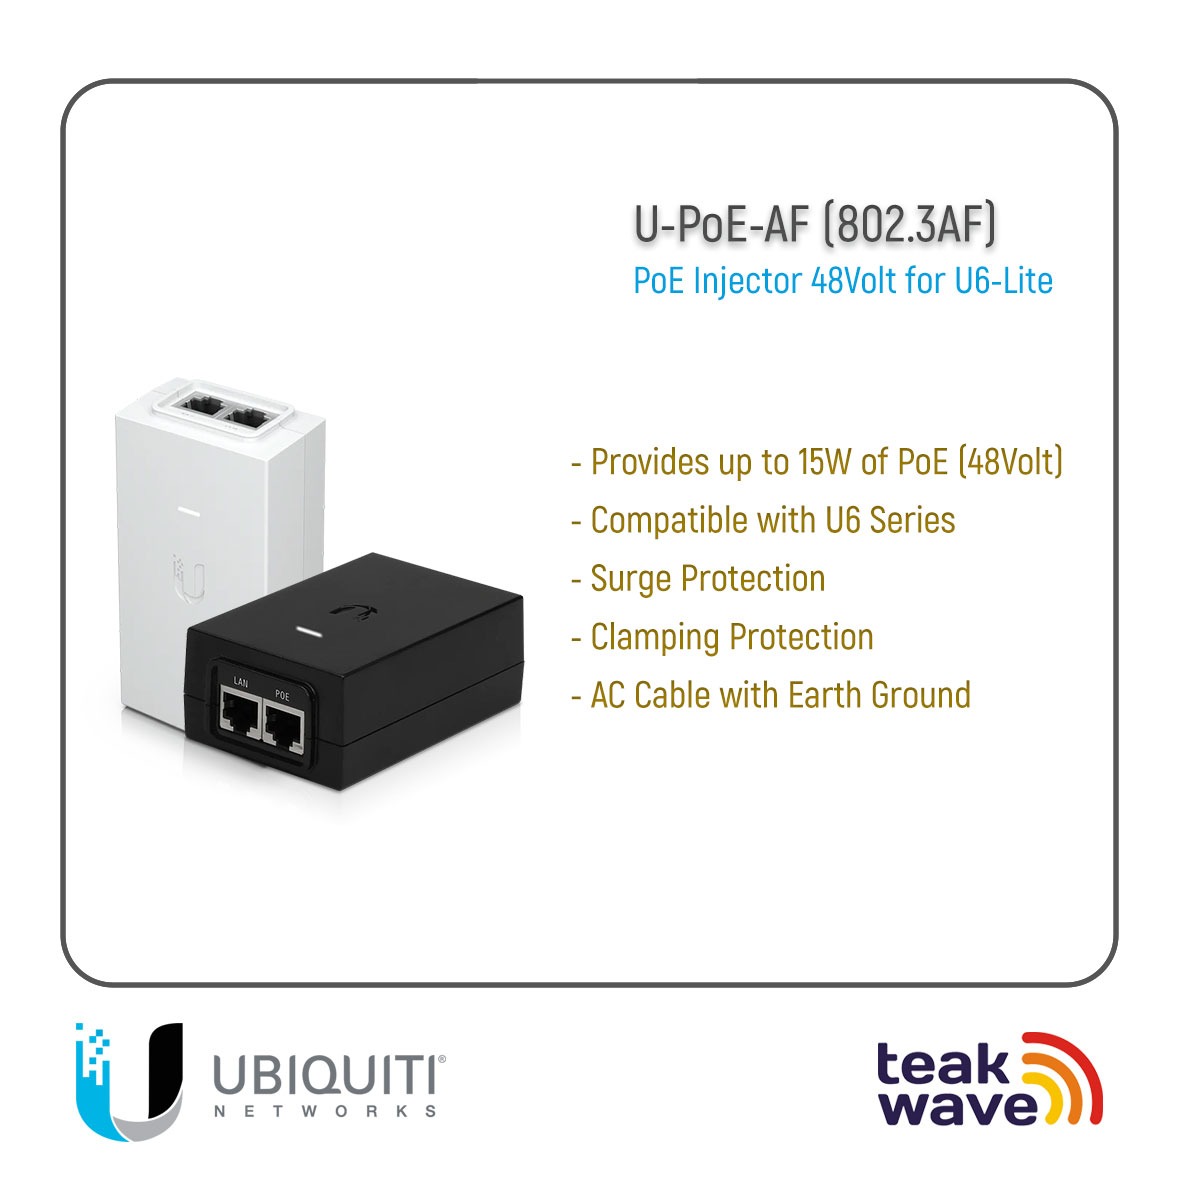 Ubiquiti U-POE-AF 802.3AF Power over Ethernet (PoE) Injector Adapter